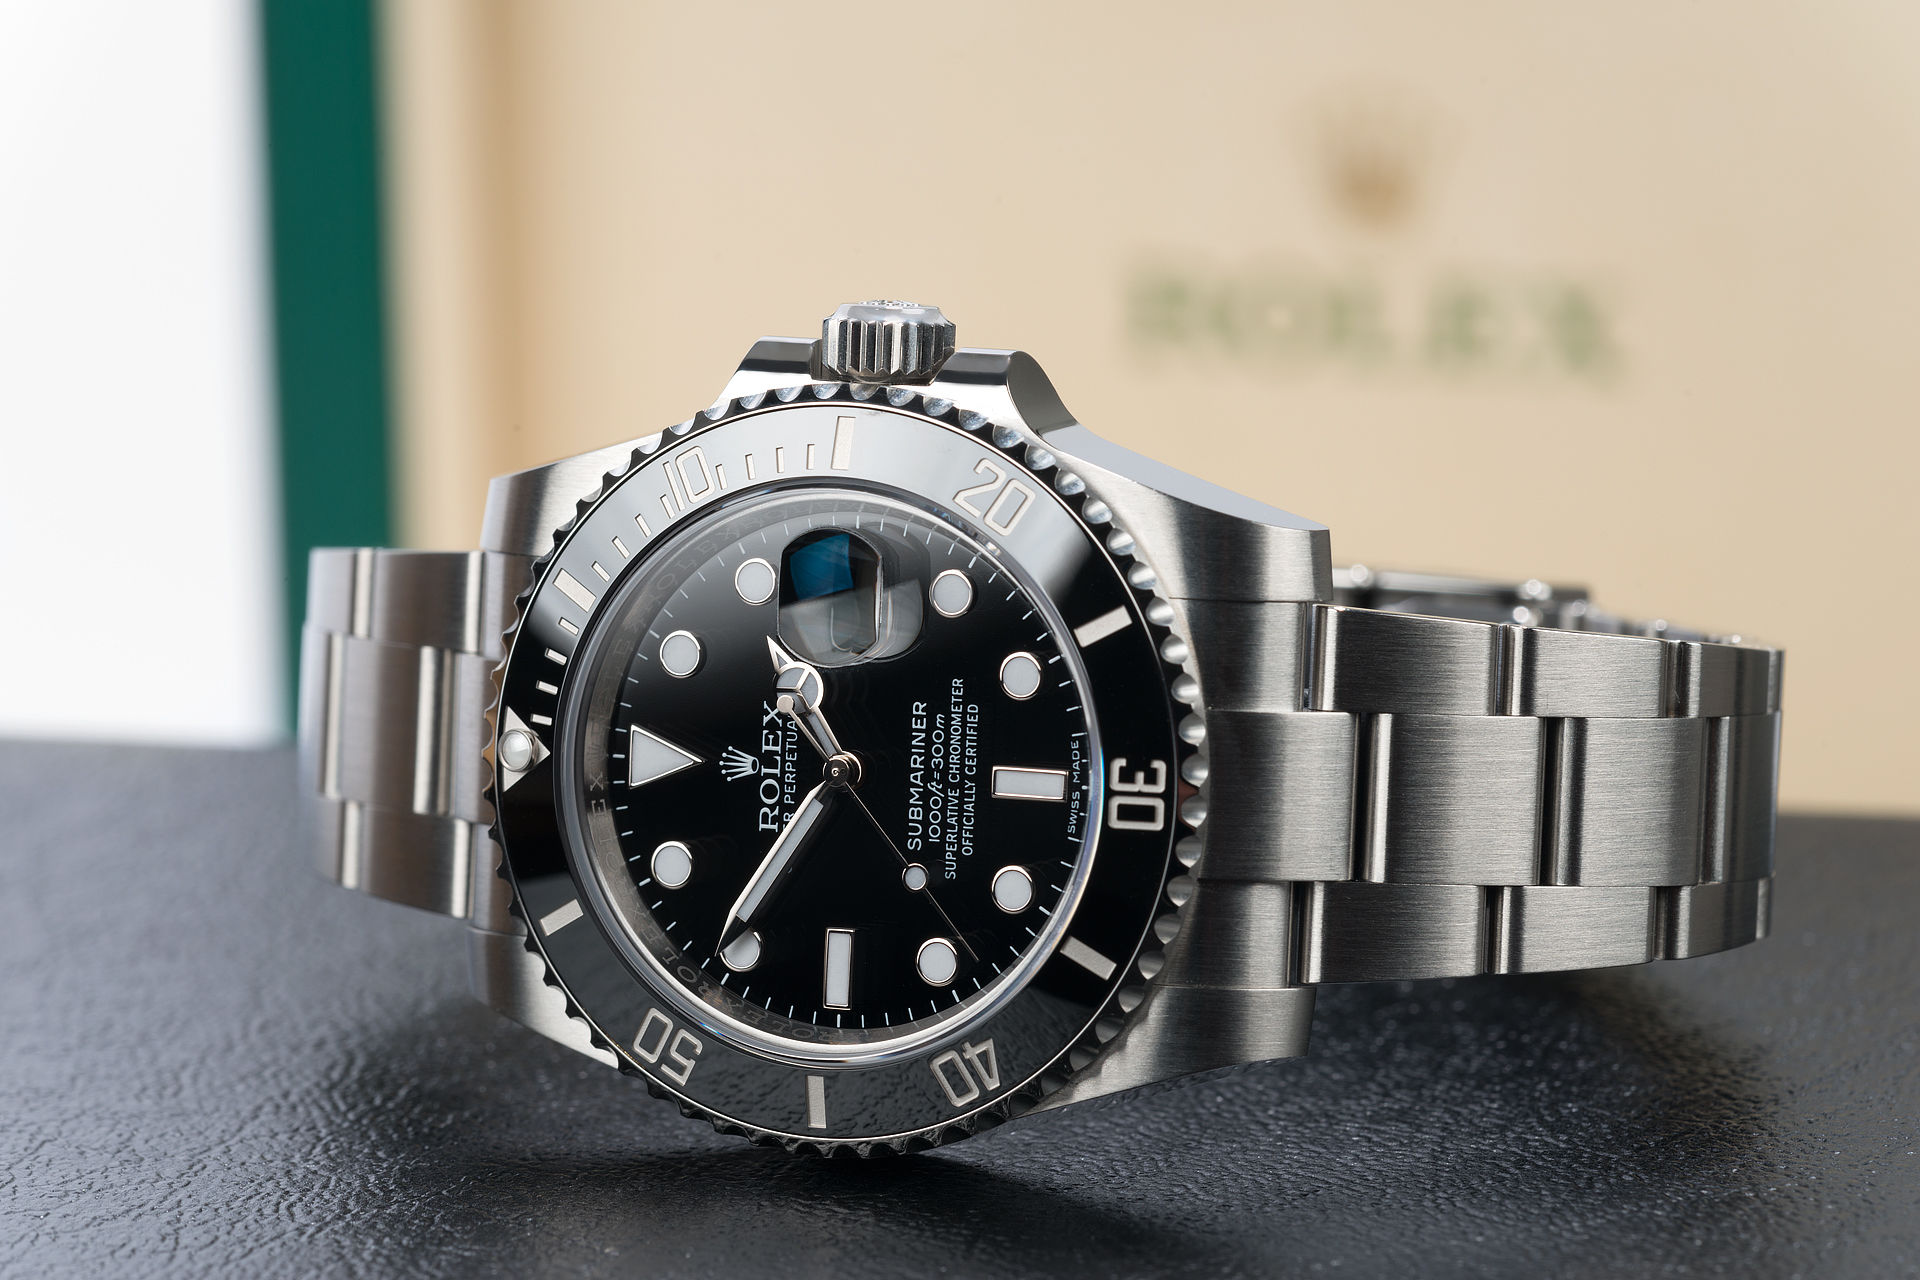 ref 116610LN | 'Brand New' 5 Year Rolex Warranty | Rolex Submariner Date